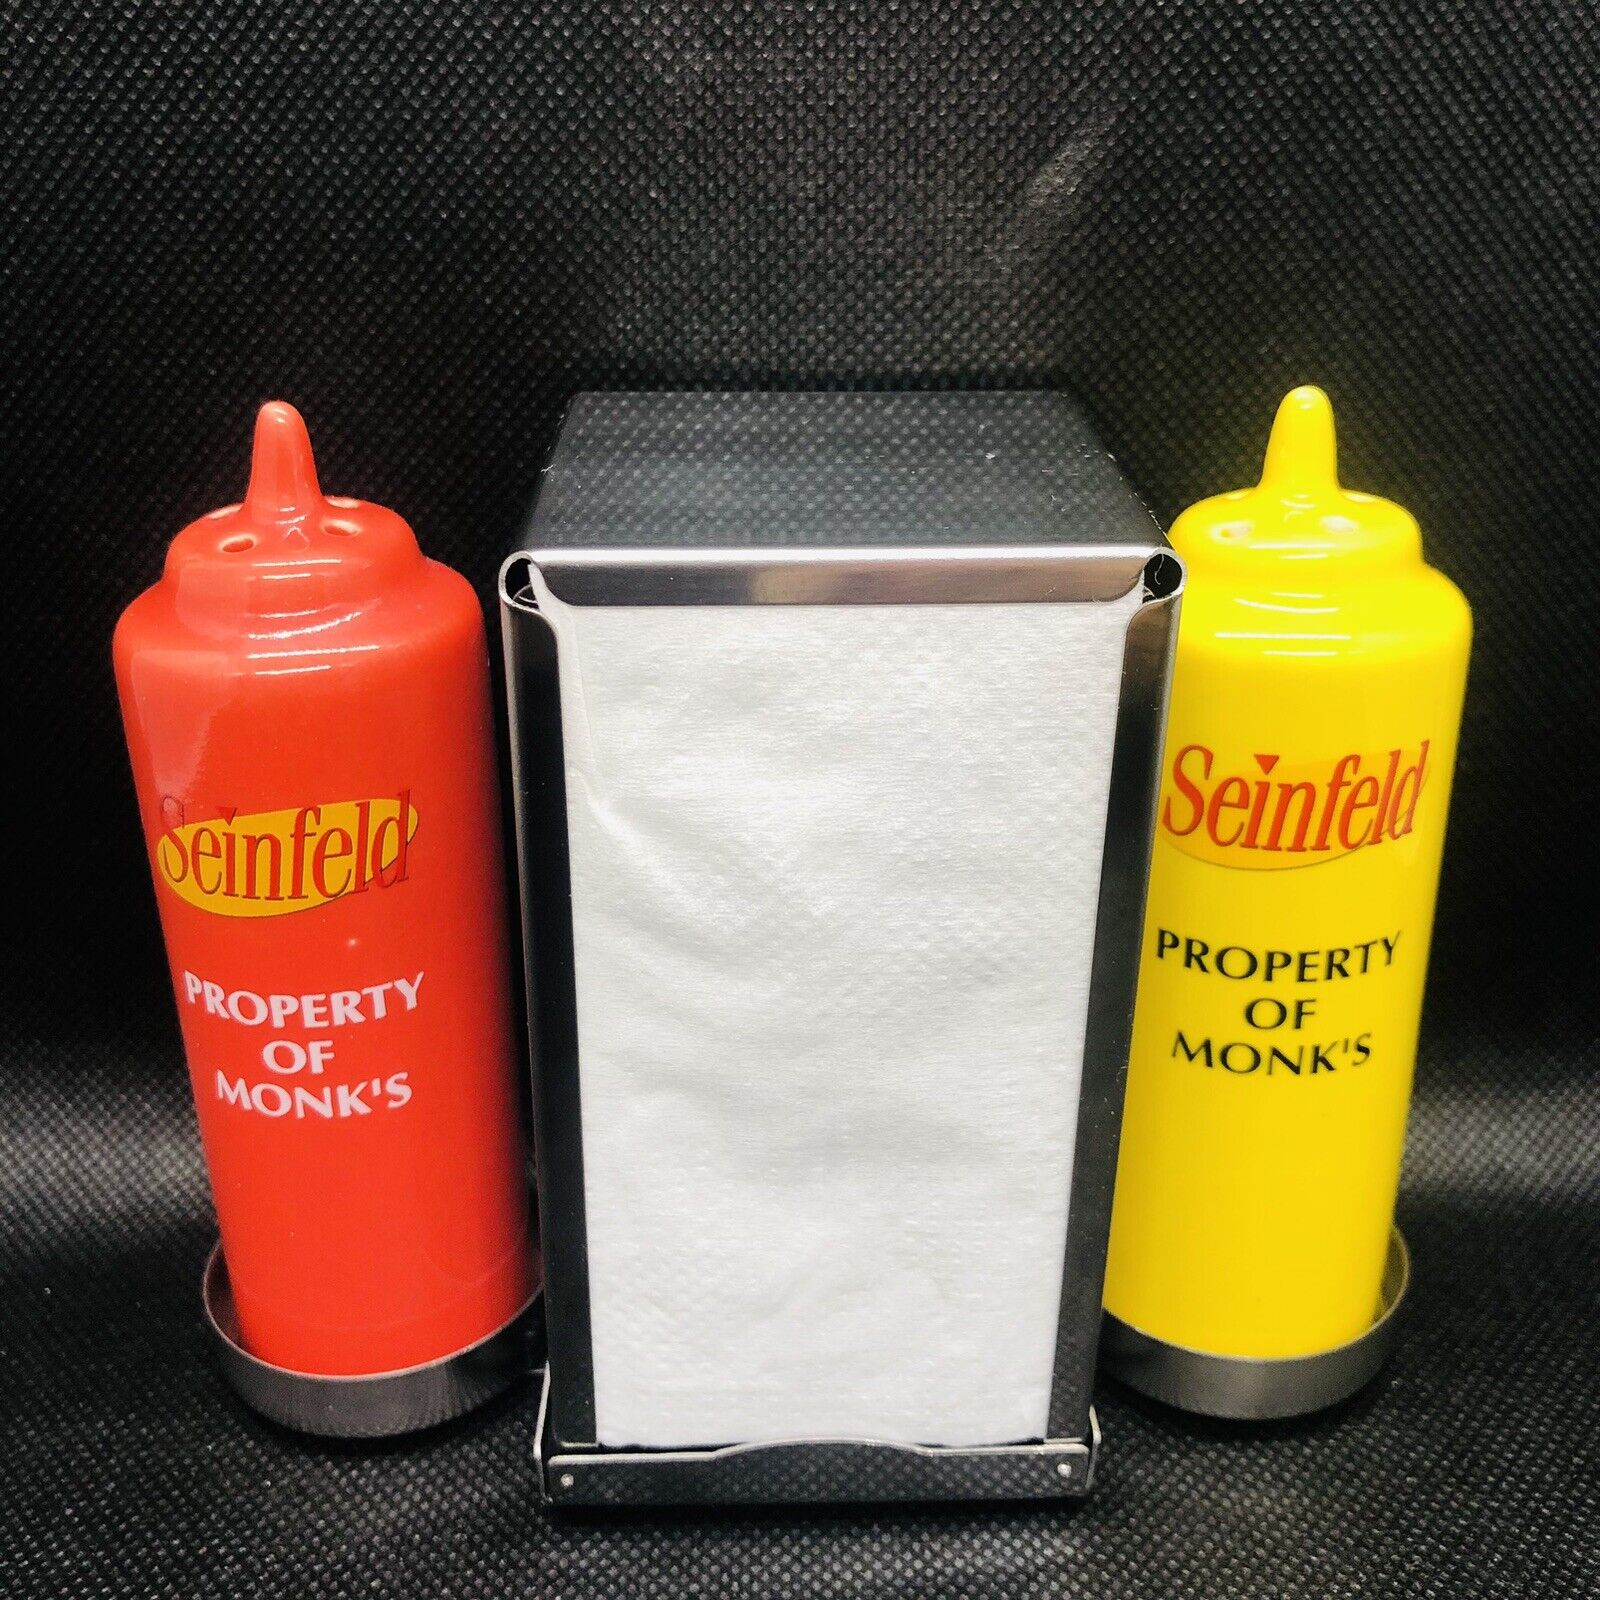 Seinfeld Property Of Monk\'s Ceramic Salt & Pepper Shakers & Napkin Dispenser Set